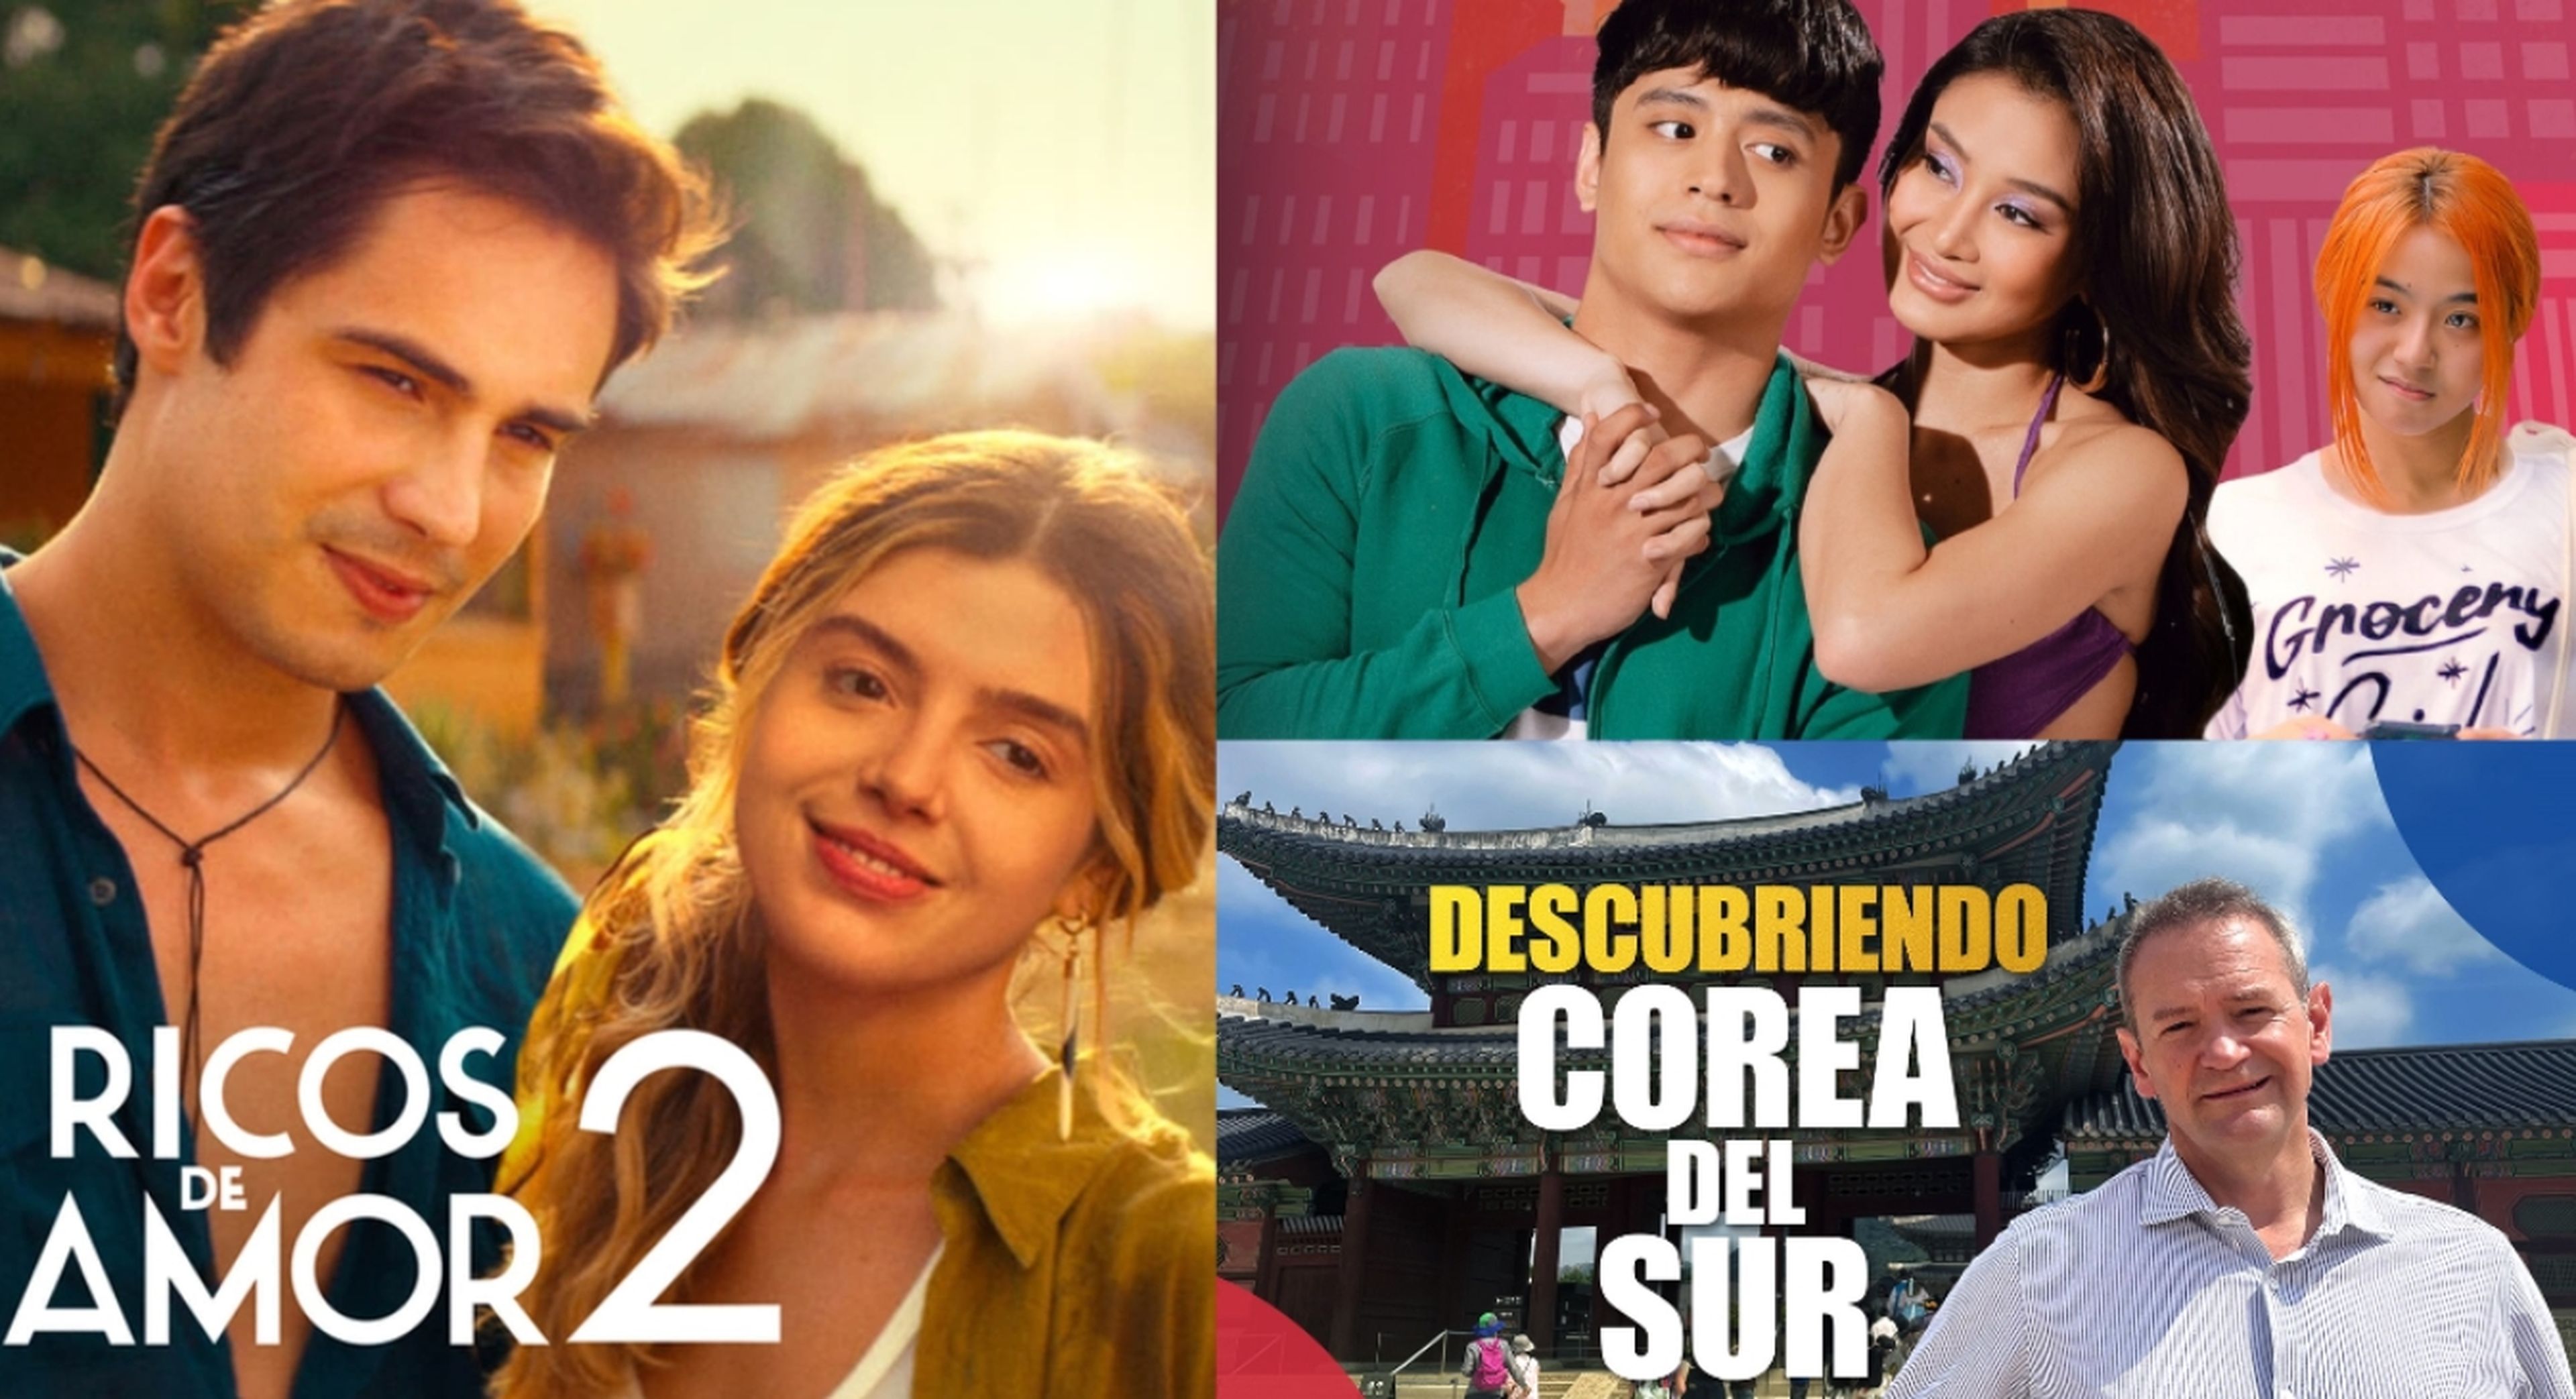 Qué películas ver este fin de semana en Netflix y Movistar Plus+: Corea del Sur y mucho amor adolescente